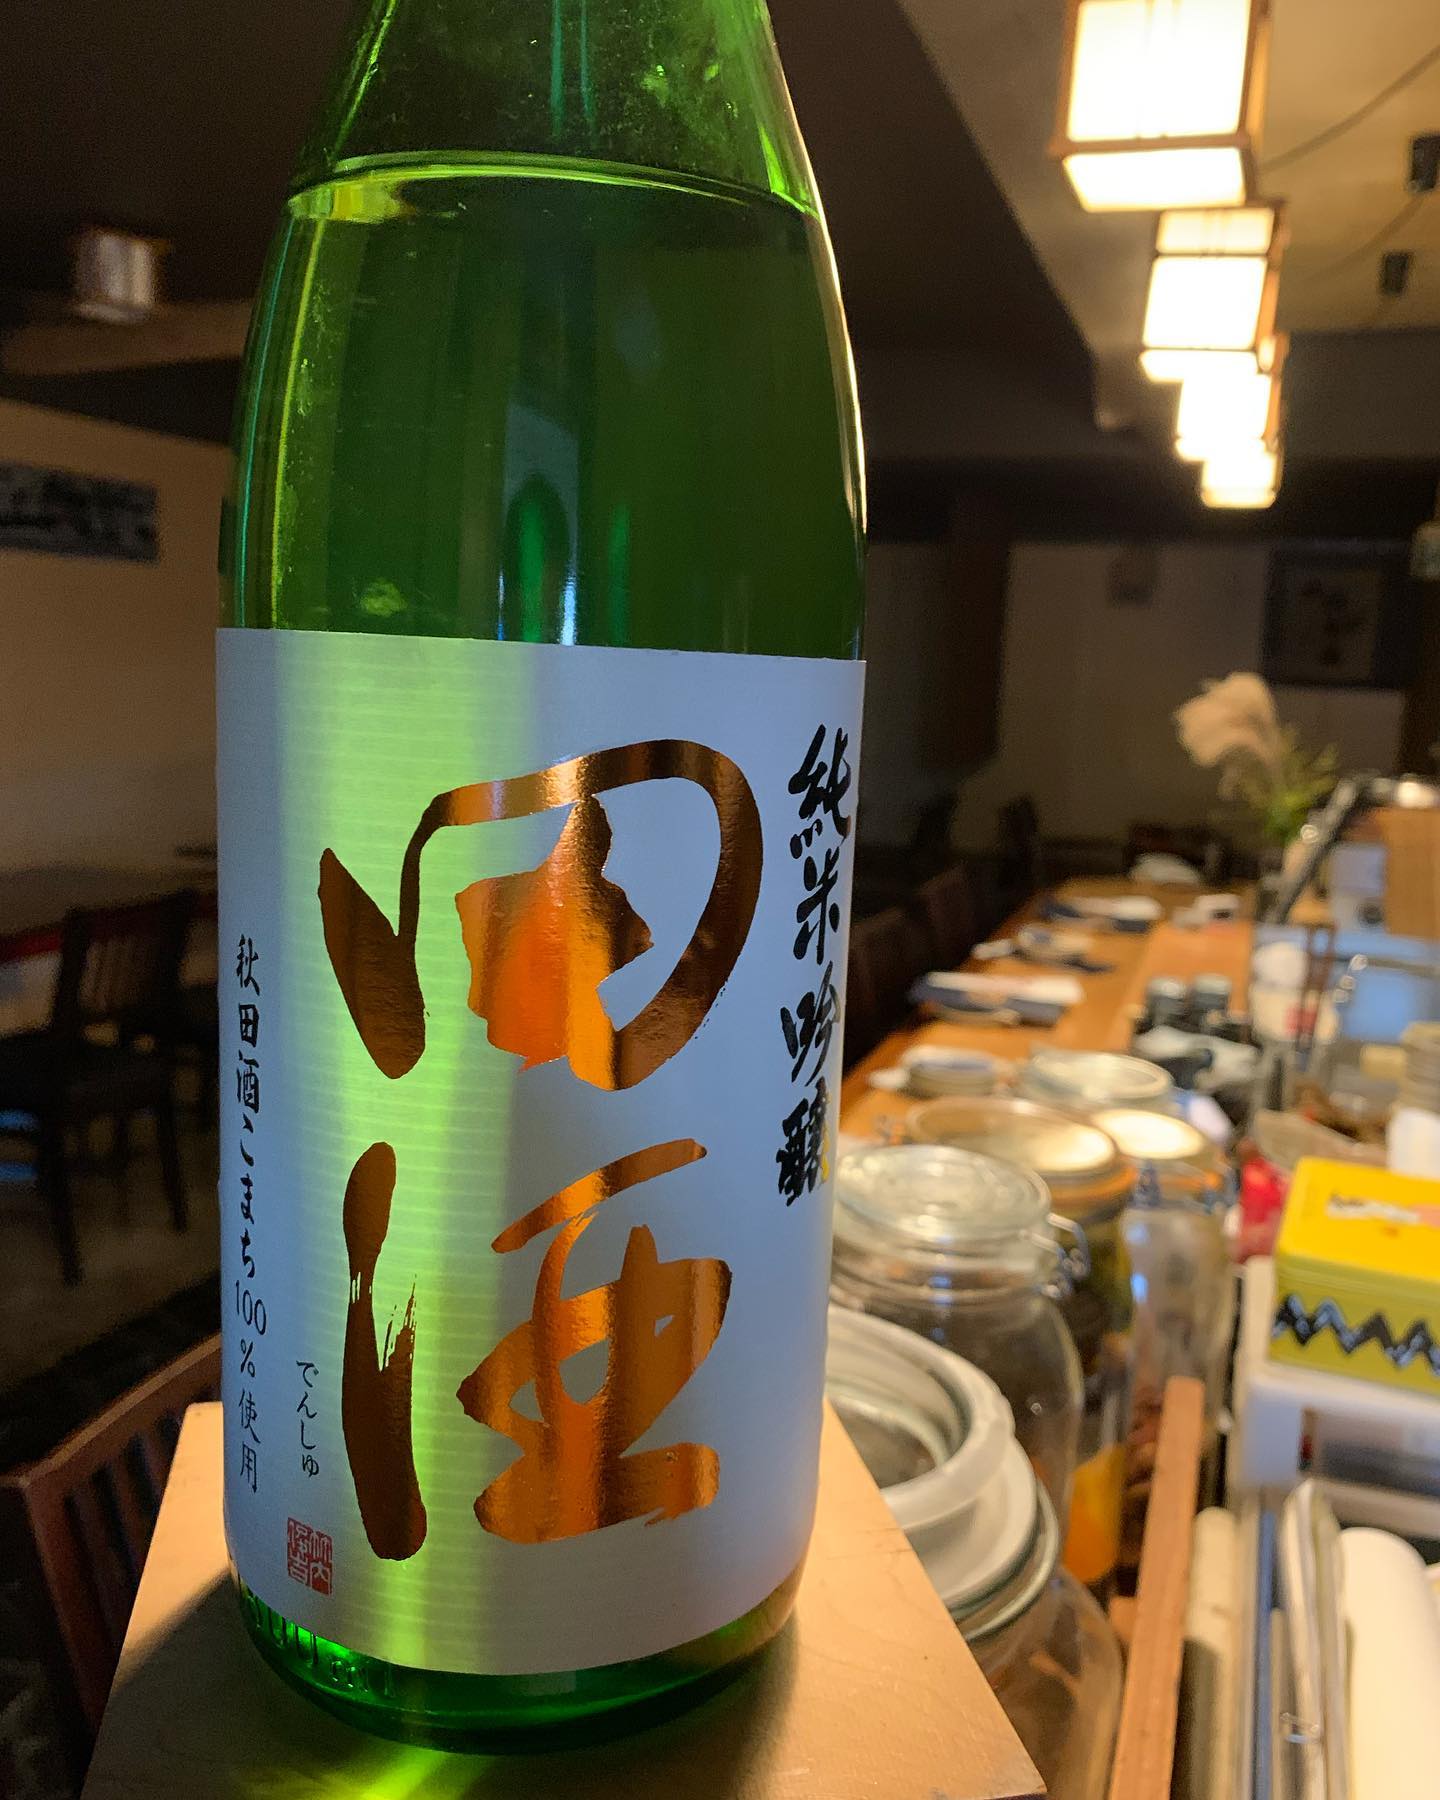 本日より日本酒紹介
「田酒」

飲み口は軽やかですが秋田酒こまちのしっかりした旨みに酸味がバランス良く、余韻のふくらみで杯が進みます。 
食中酒としてお楽しみください。
 #